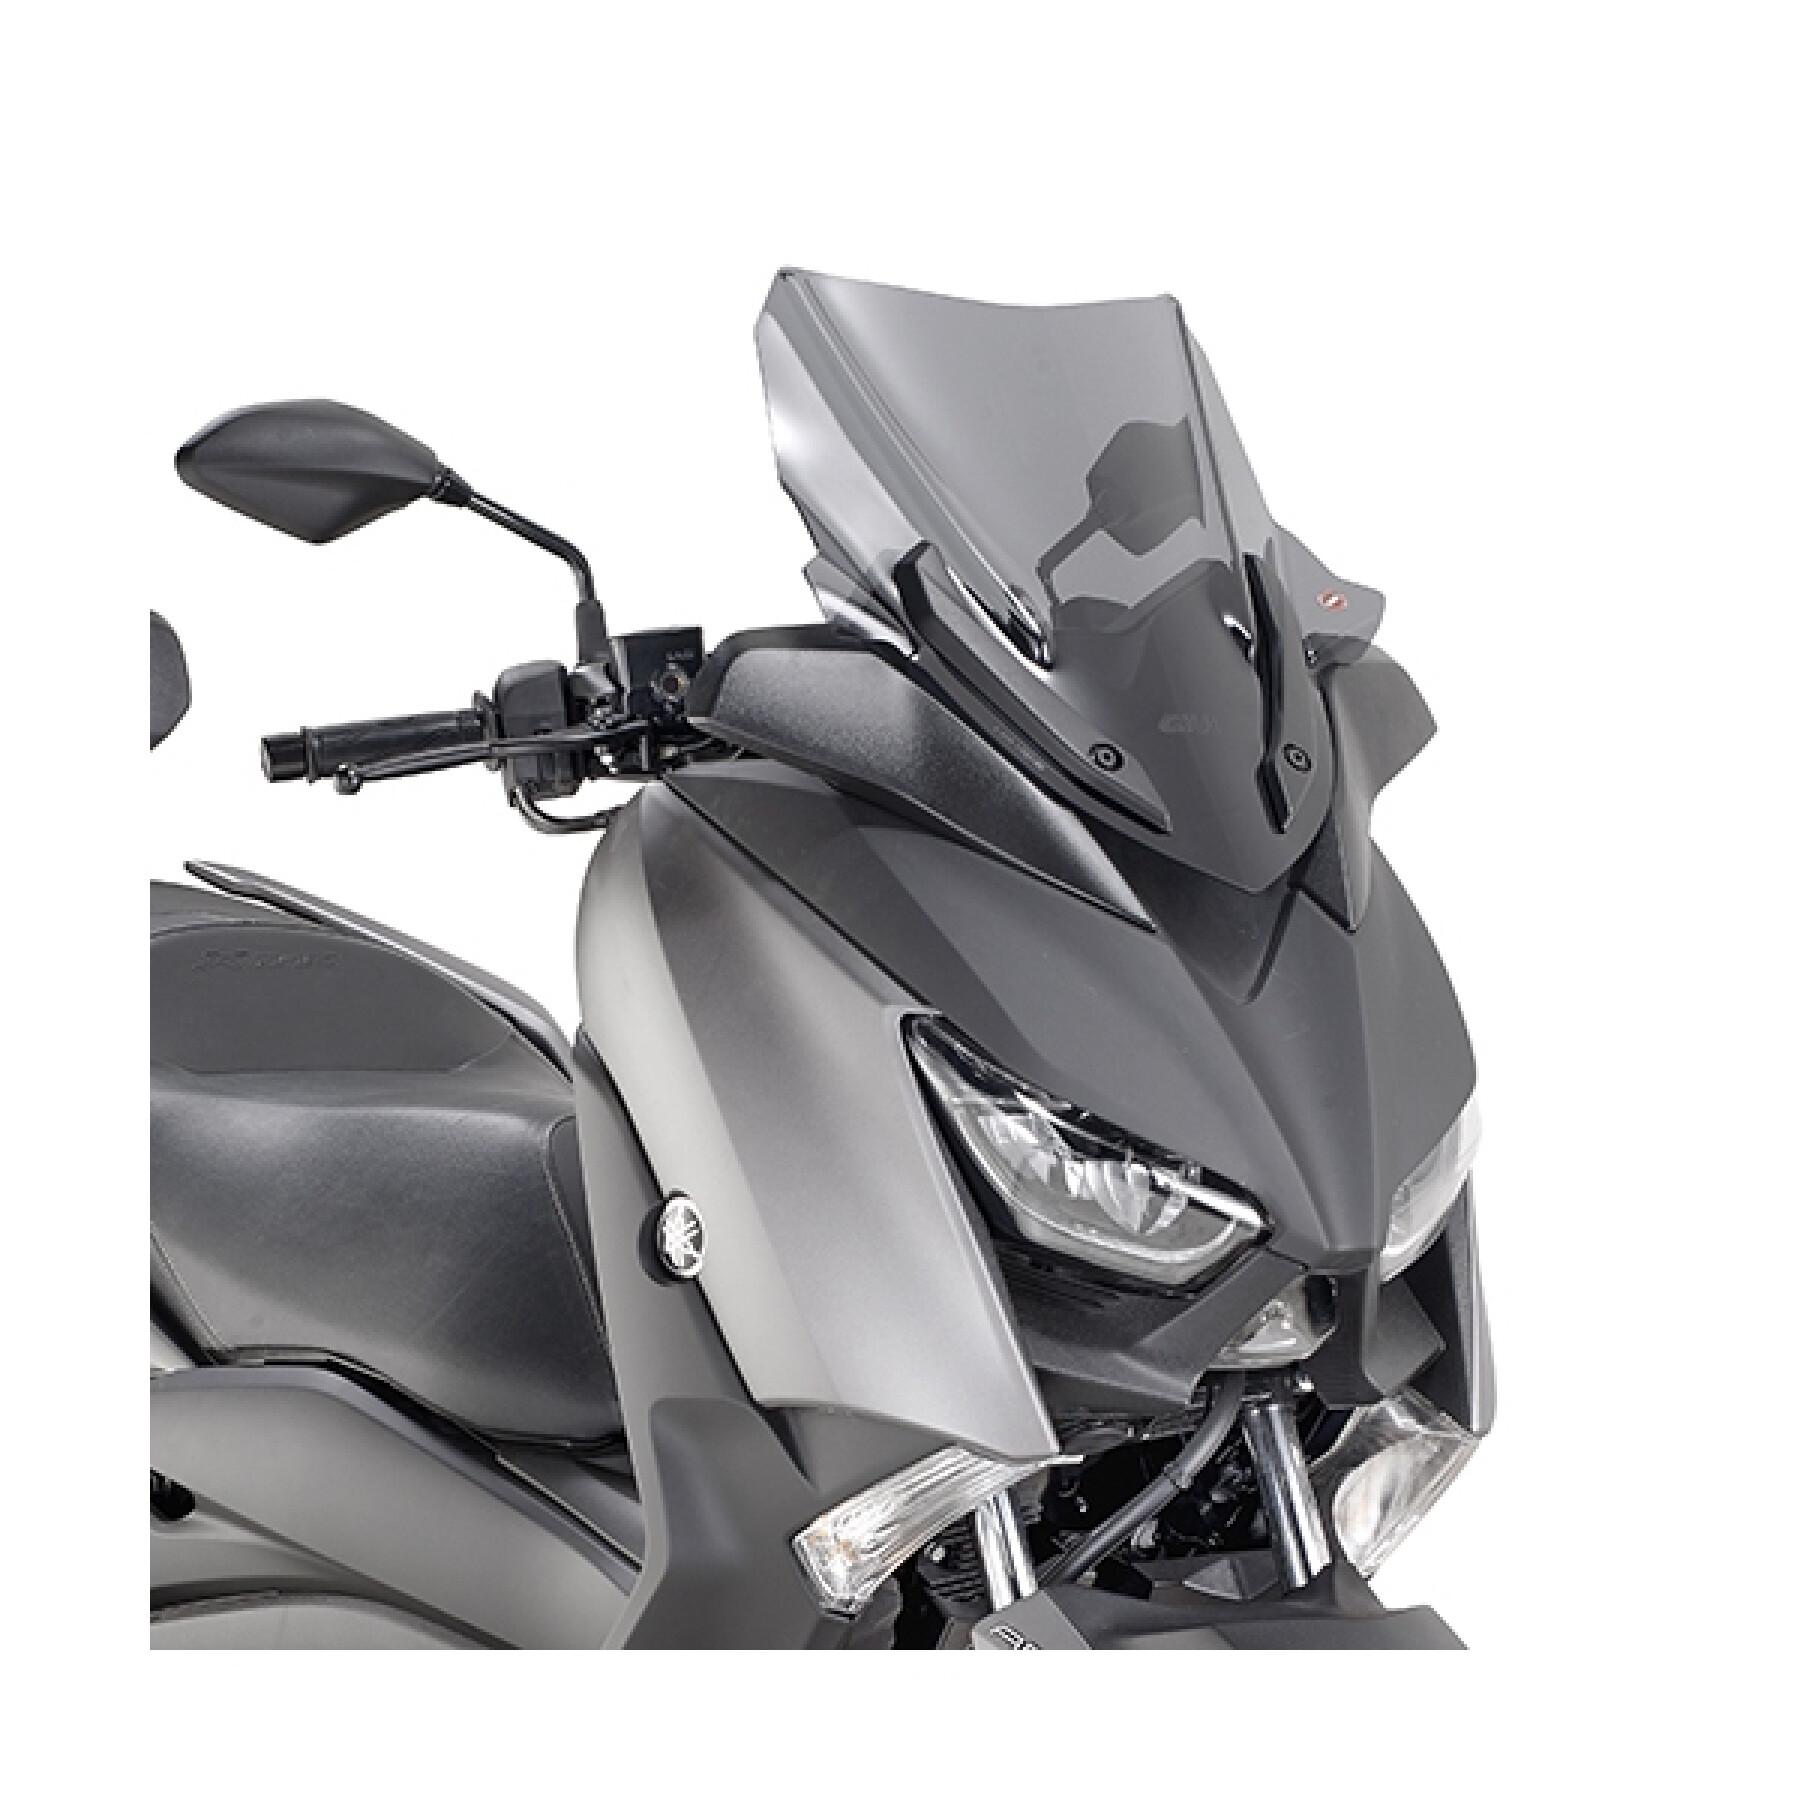 Pare-brise scooter Givi Yamaha X-Max 125 / 300 / 400 (2018 à 2019)